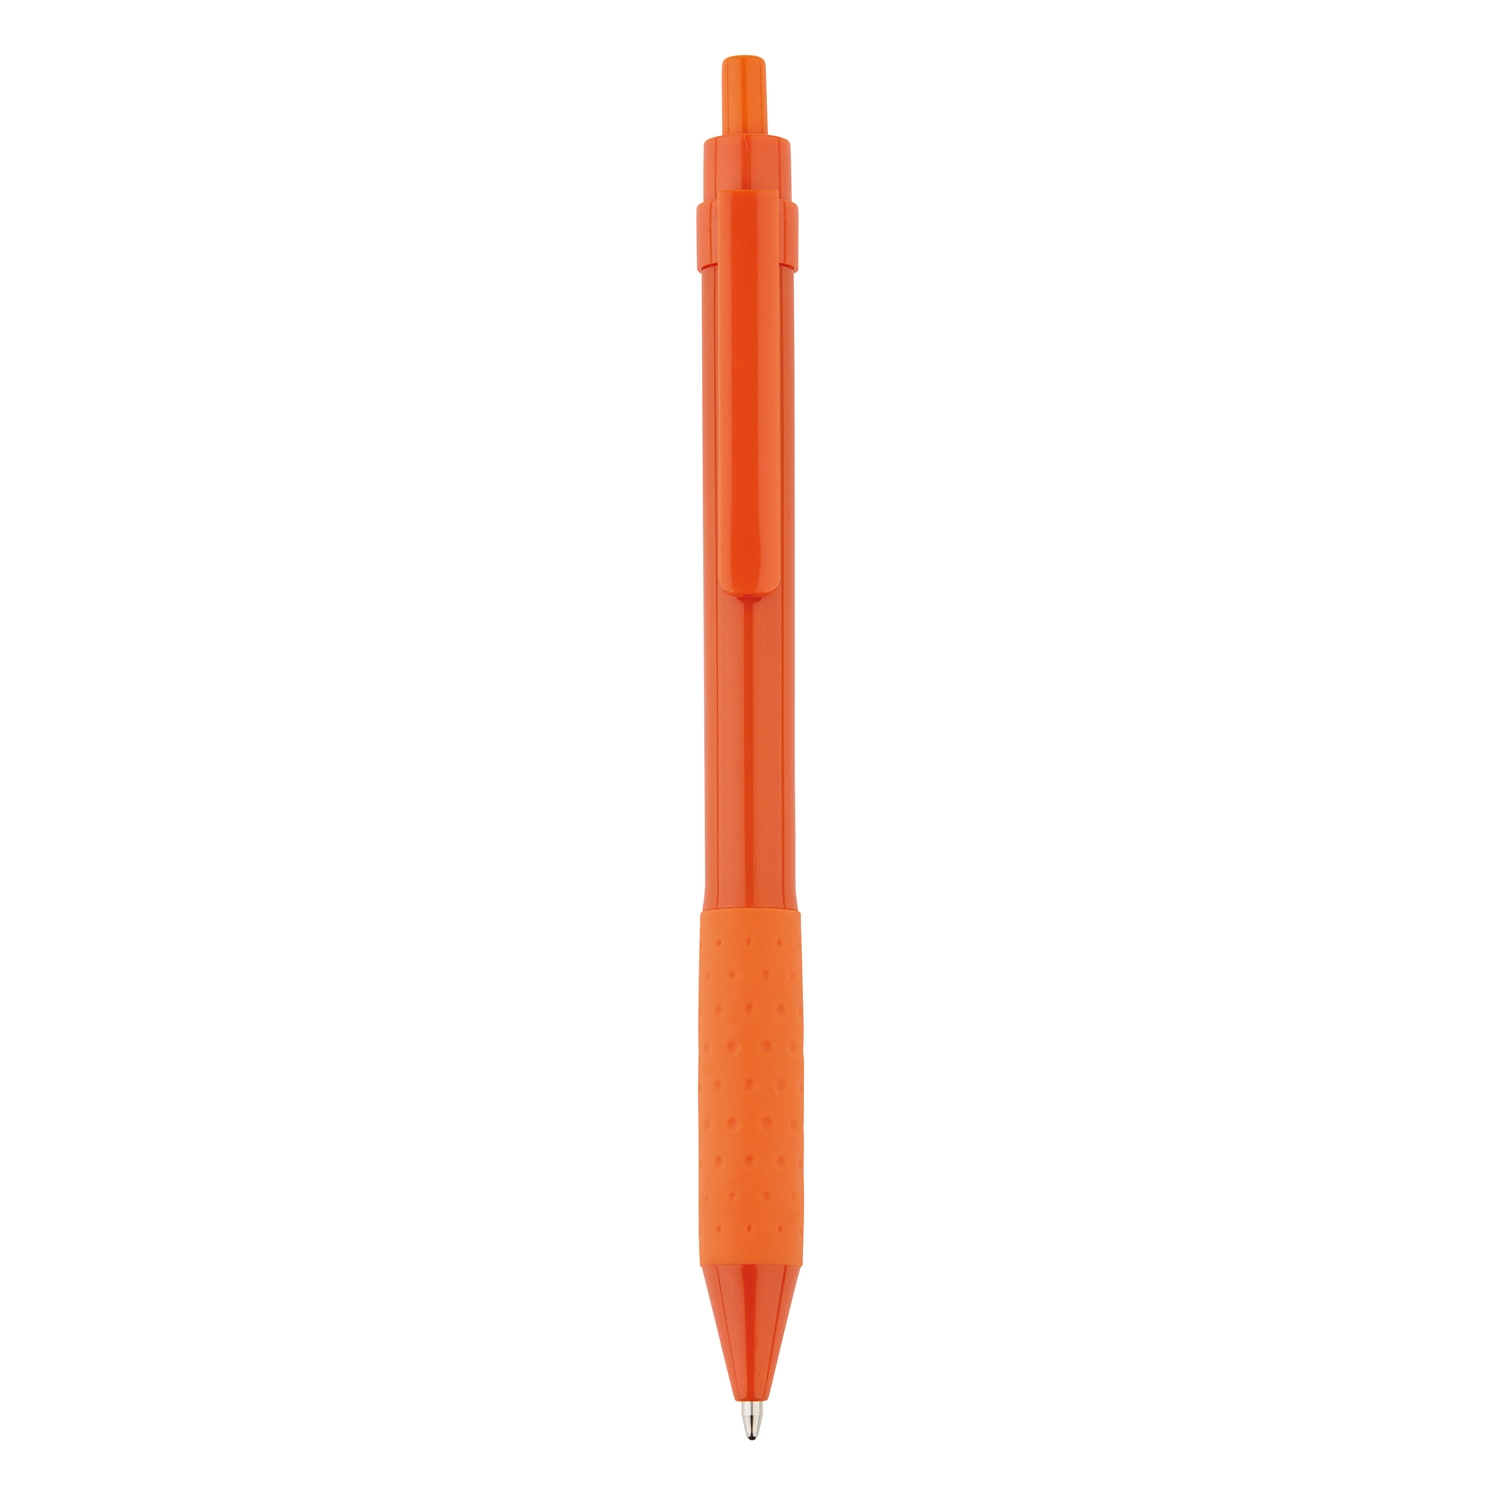 Ручка X2, оранжевый, abs